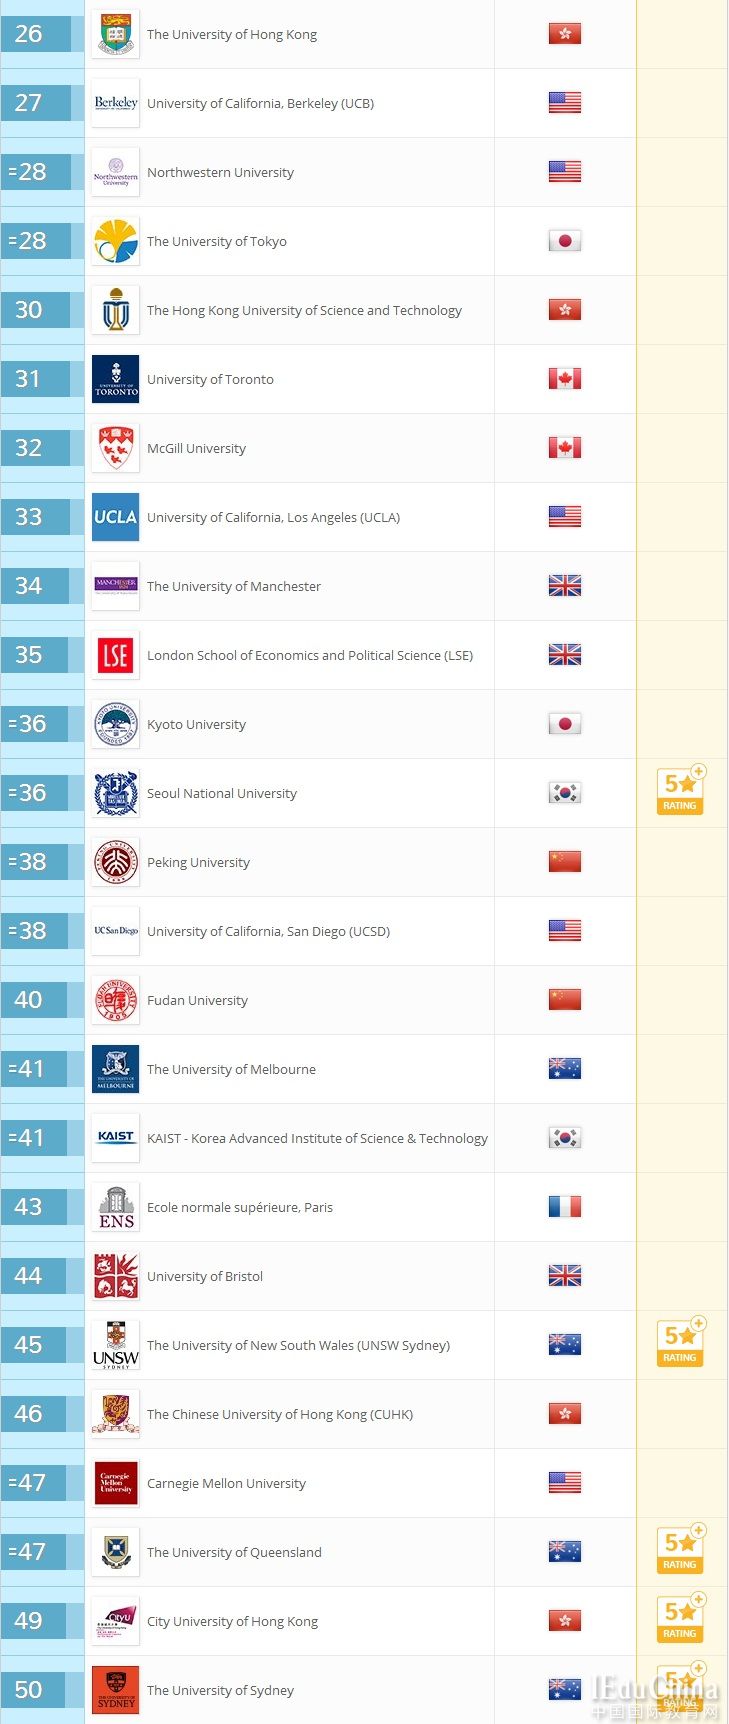 2018年QS世界大学排名公布 中国6所大学进前